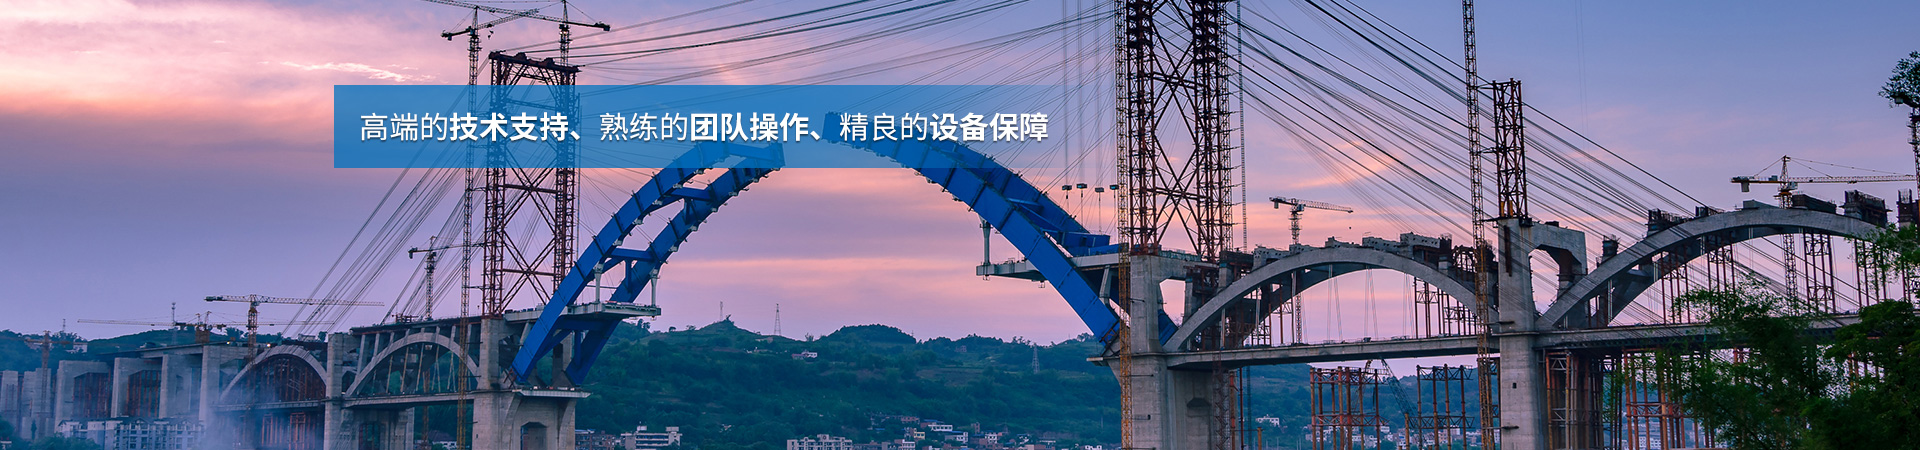 湖南省中南橋梁安裝工程有限公司_湖南橋梁安裝|舊橋加固改造|橋梁工程技術咨詢